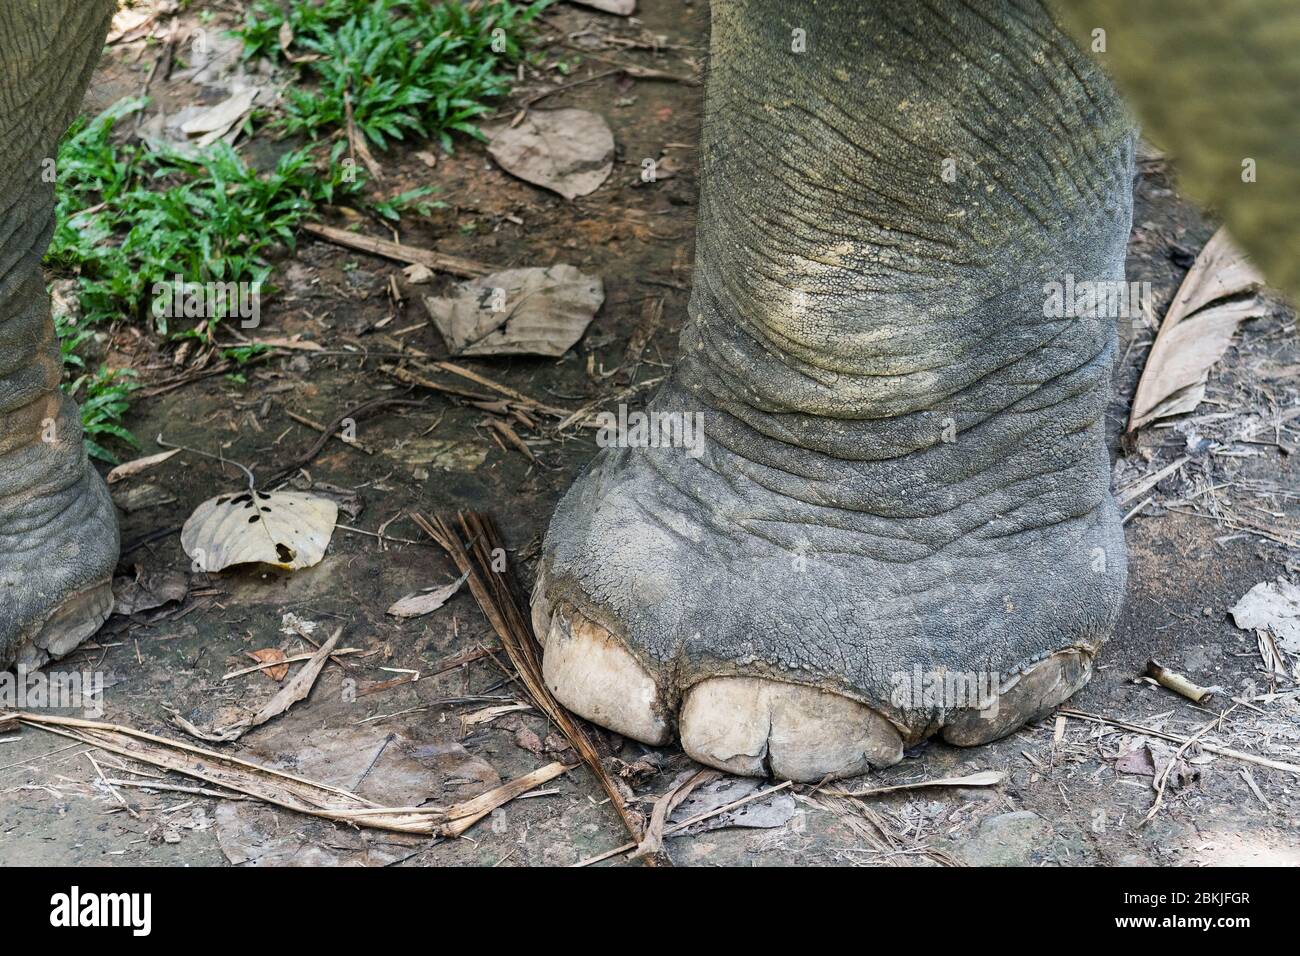 Thailand, province of Phuket, Phang Nga Elephant Park Stock Photo